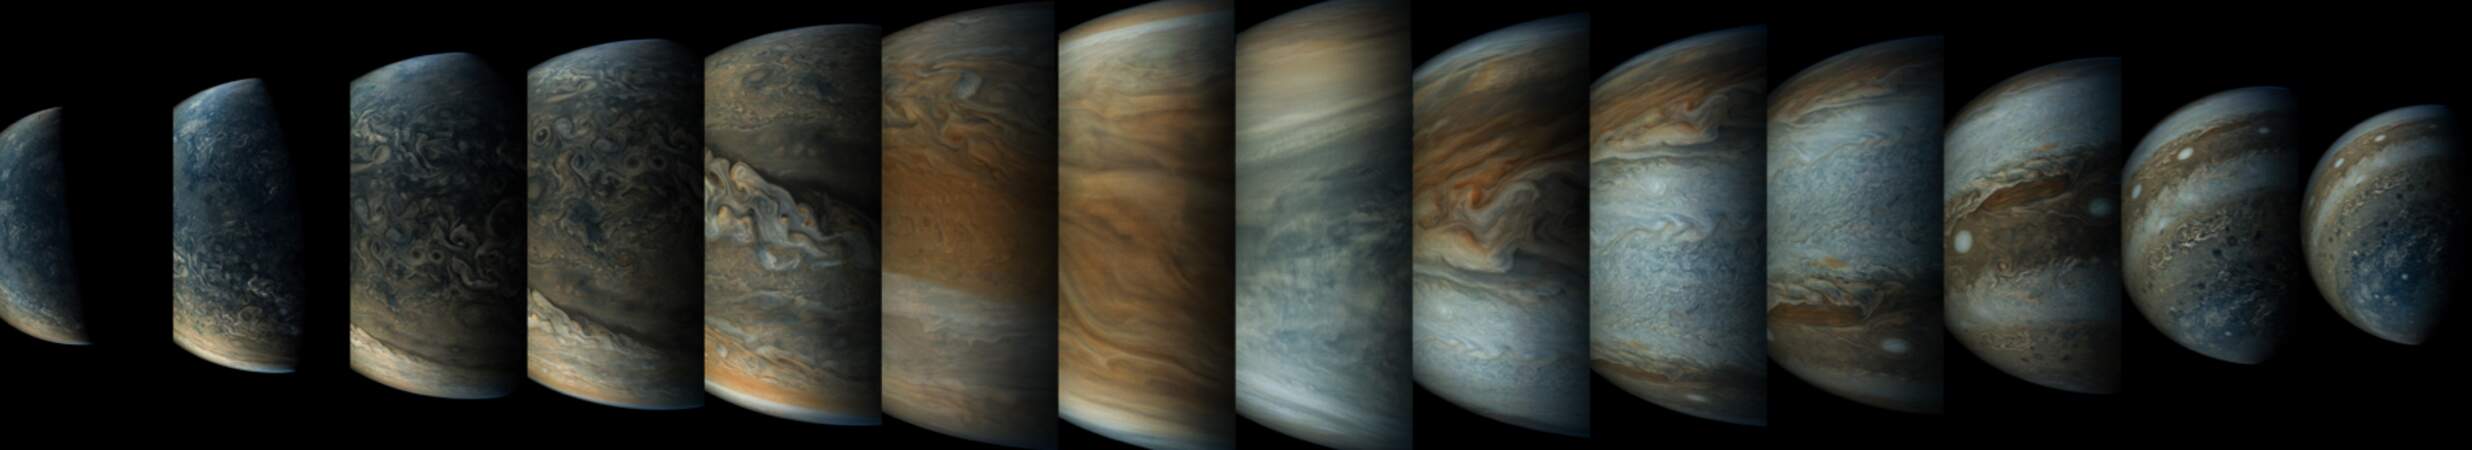 Jupiter vue par la sonde Juno